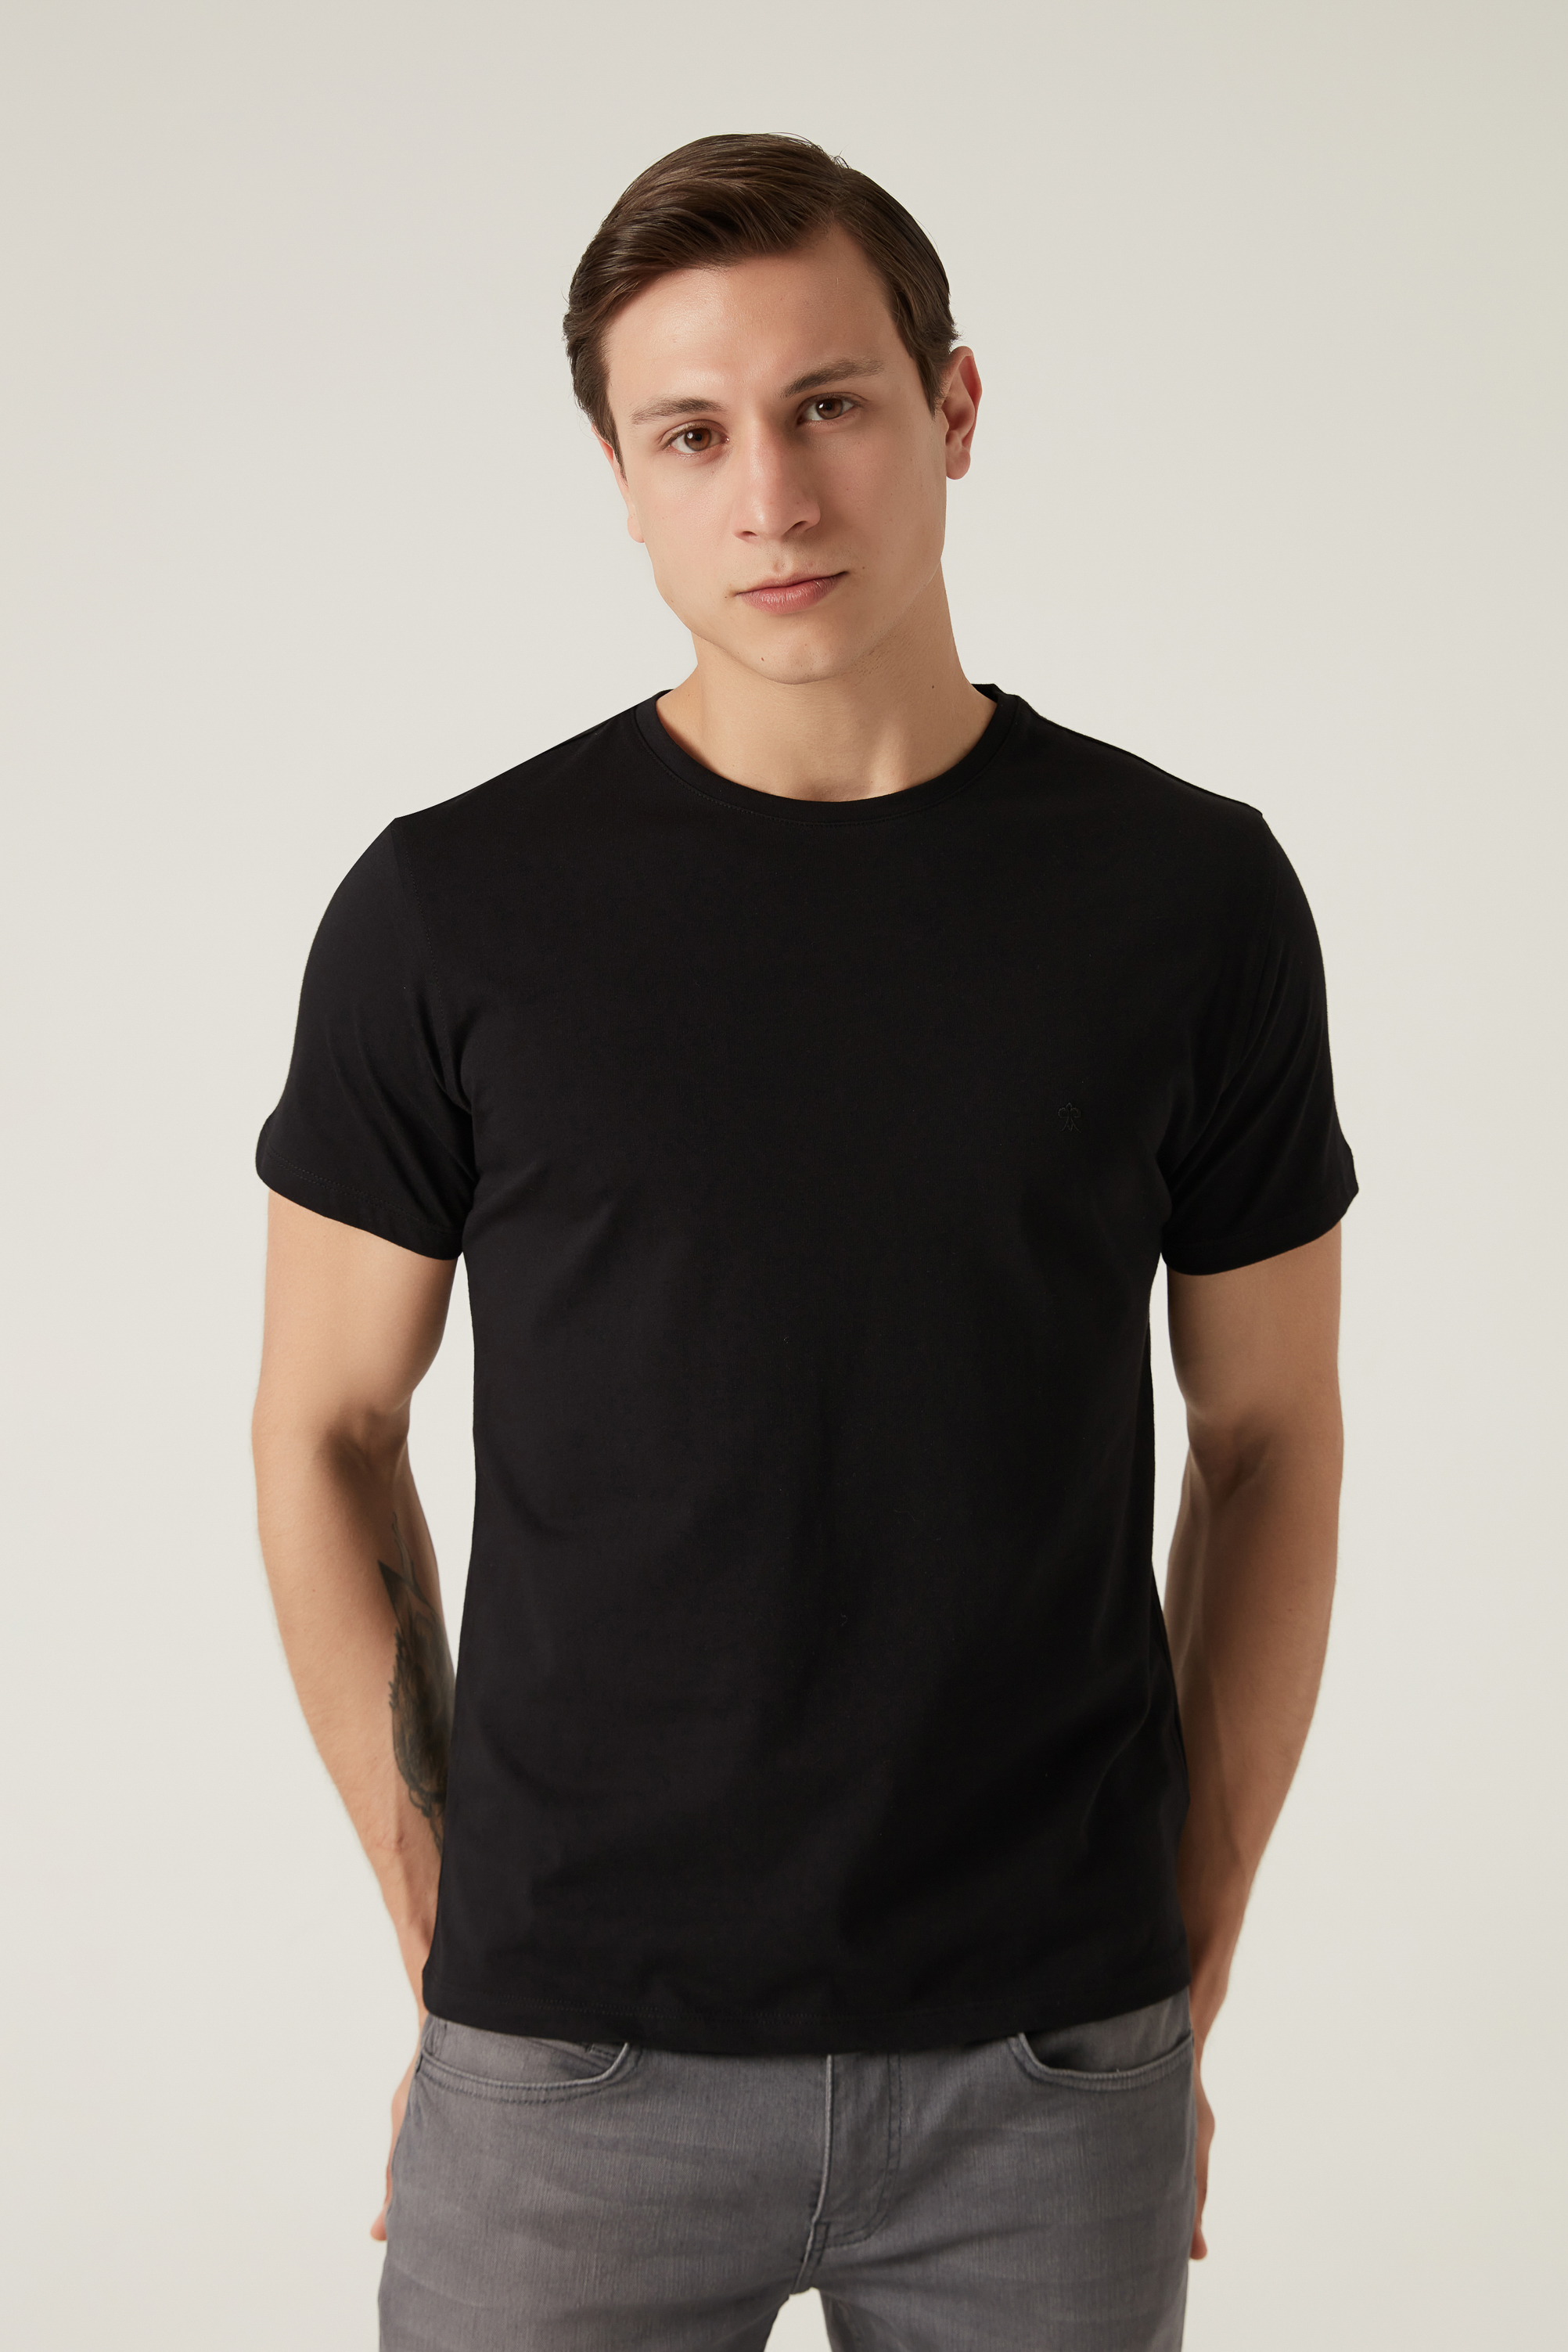 Damat Tween Damat Siyah T-shirt. 1